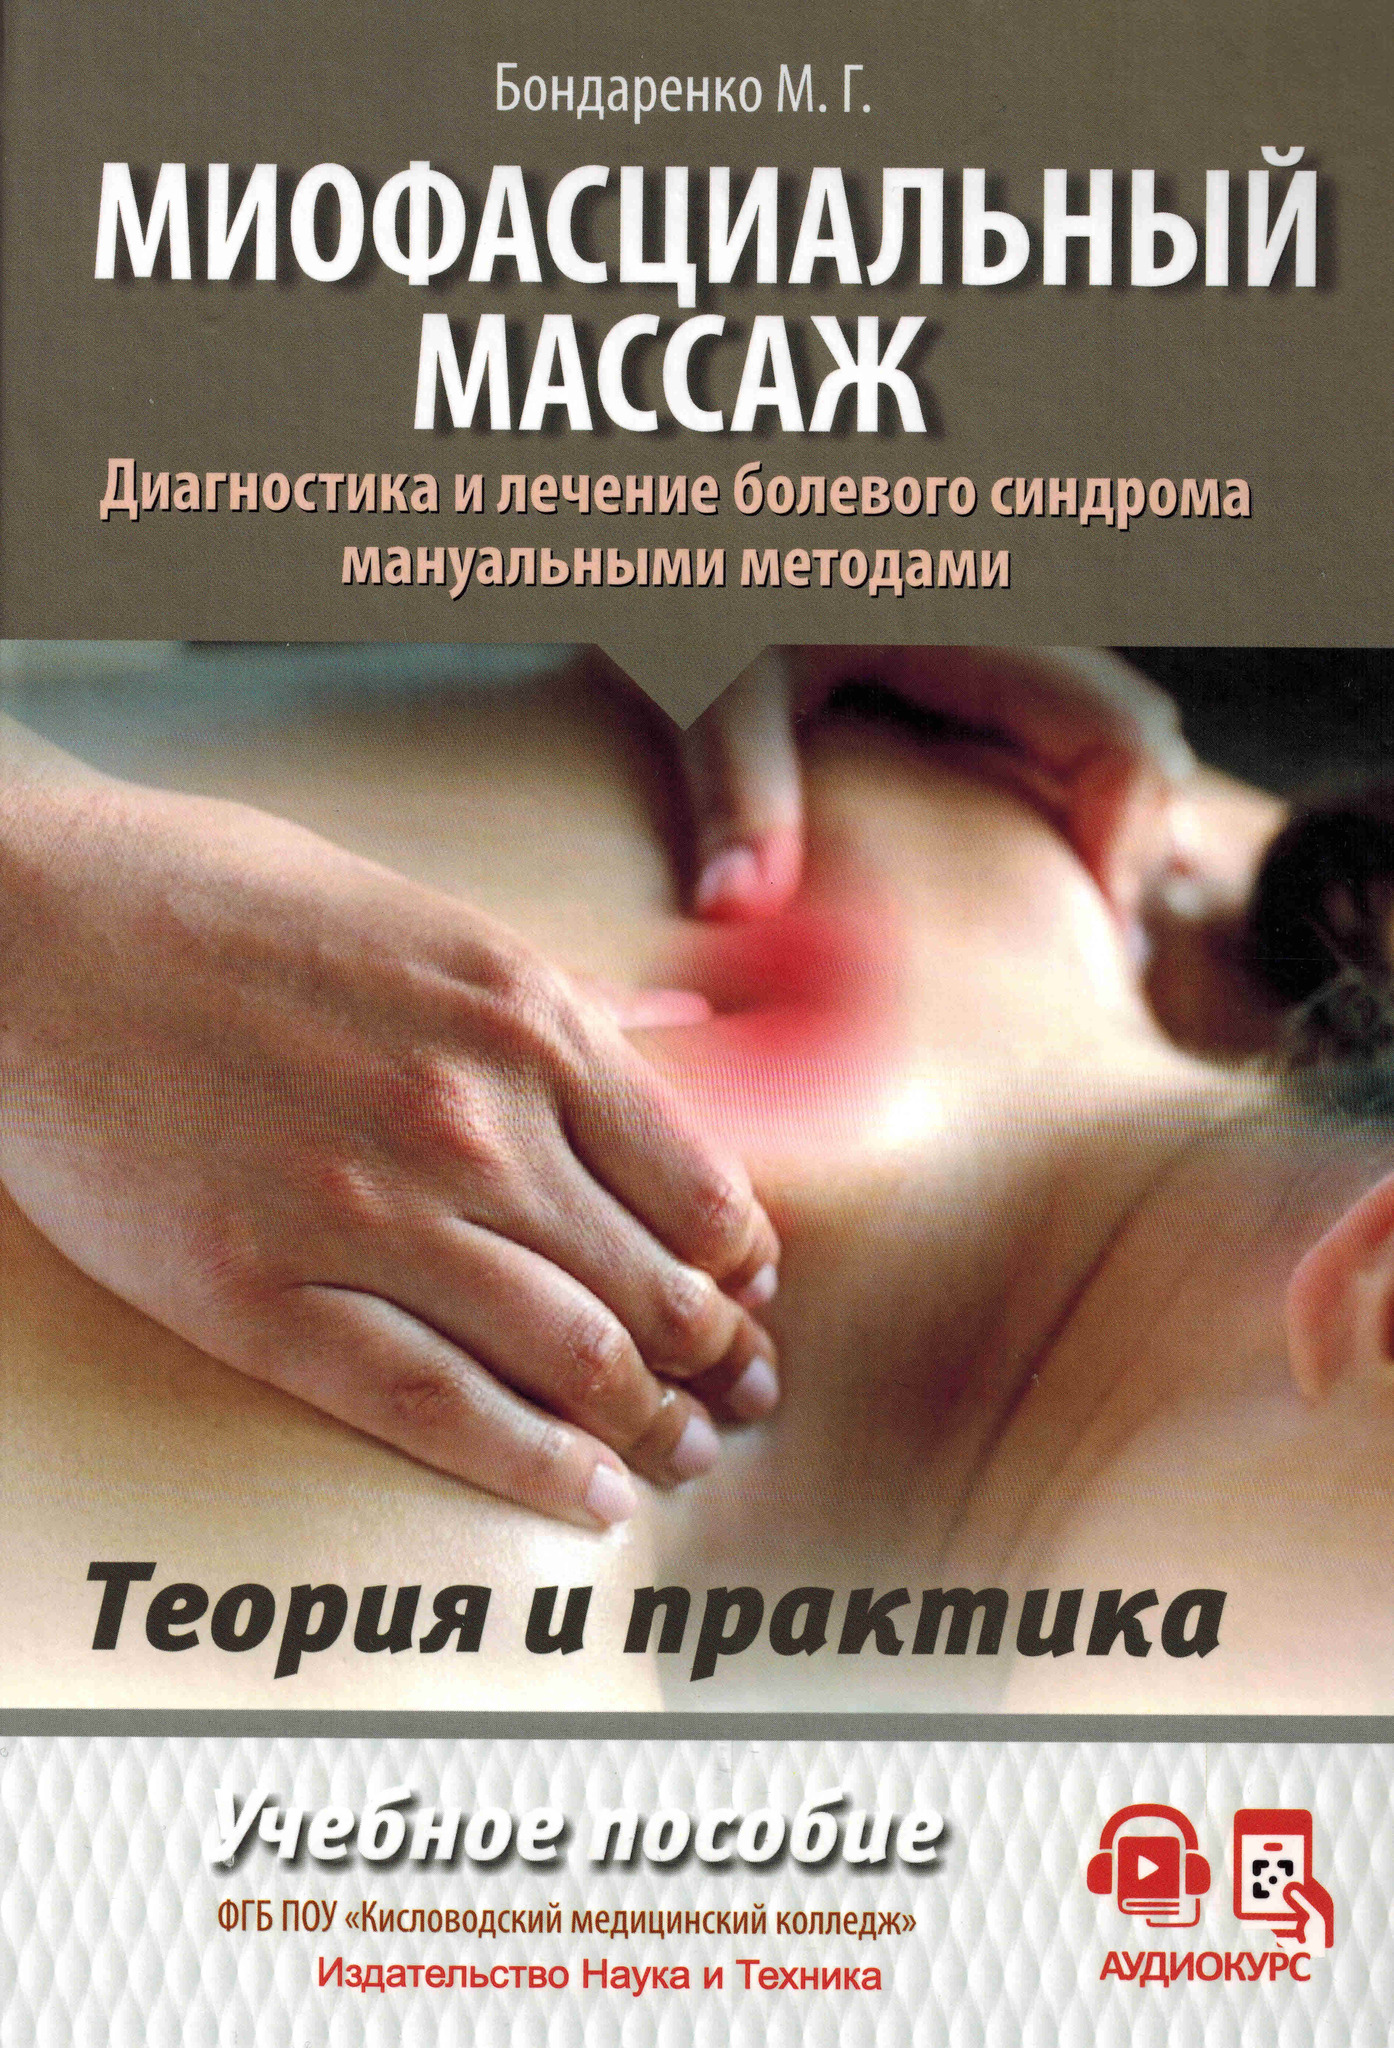 Новинки Миофасциальный массаж. Диагностика и лечение болевого синдрома мануальными методами. Теория и практика mmB11052023.jpg